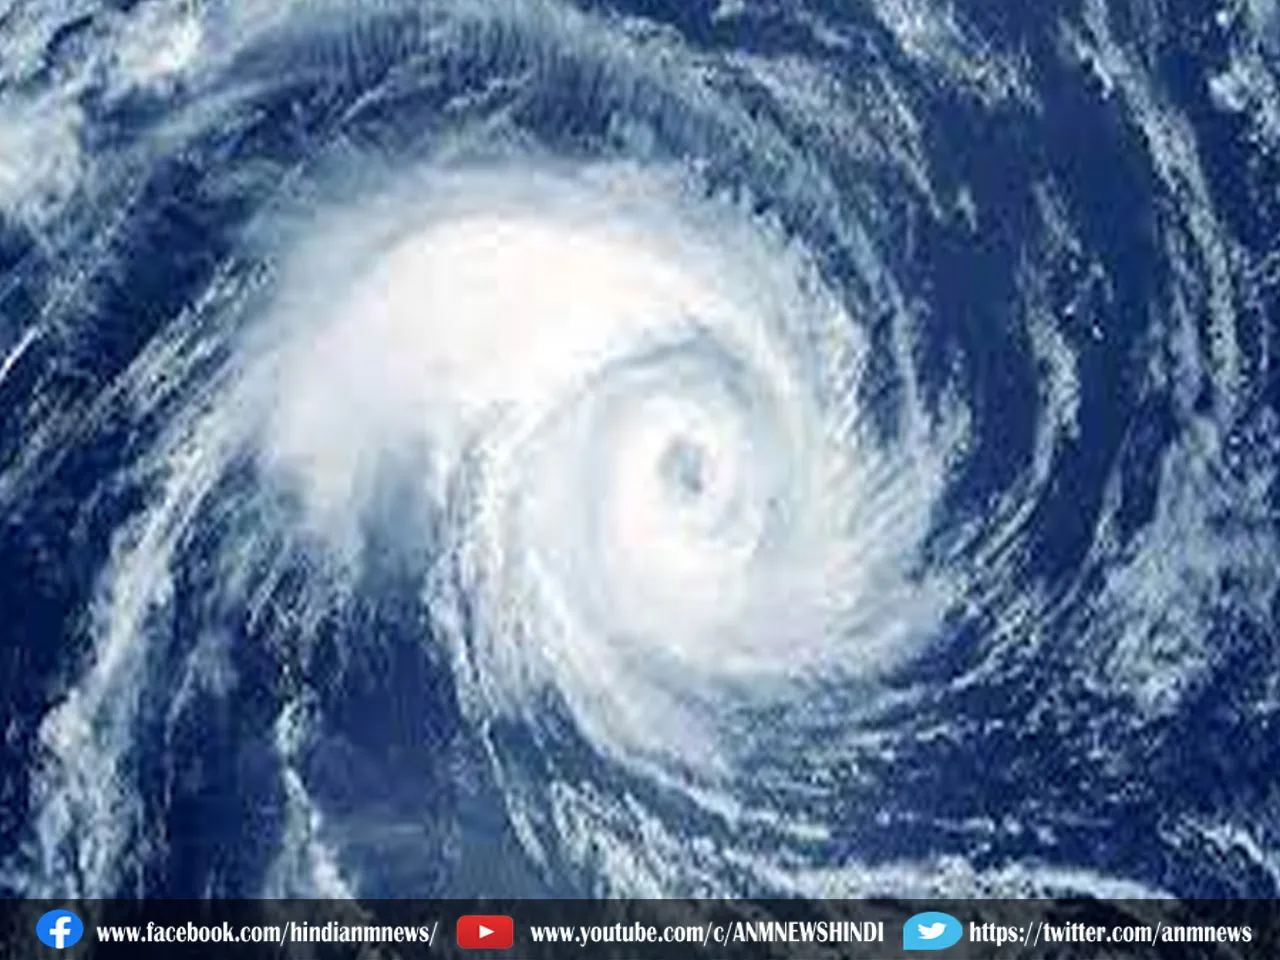 बंगााल की खाड़ी पर समुद्री तूफान का गहरा दबाव चक्रवात में बदलने की संभावना